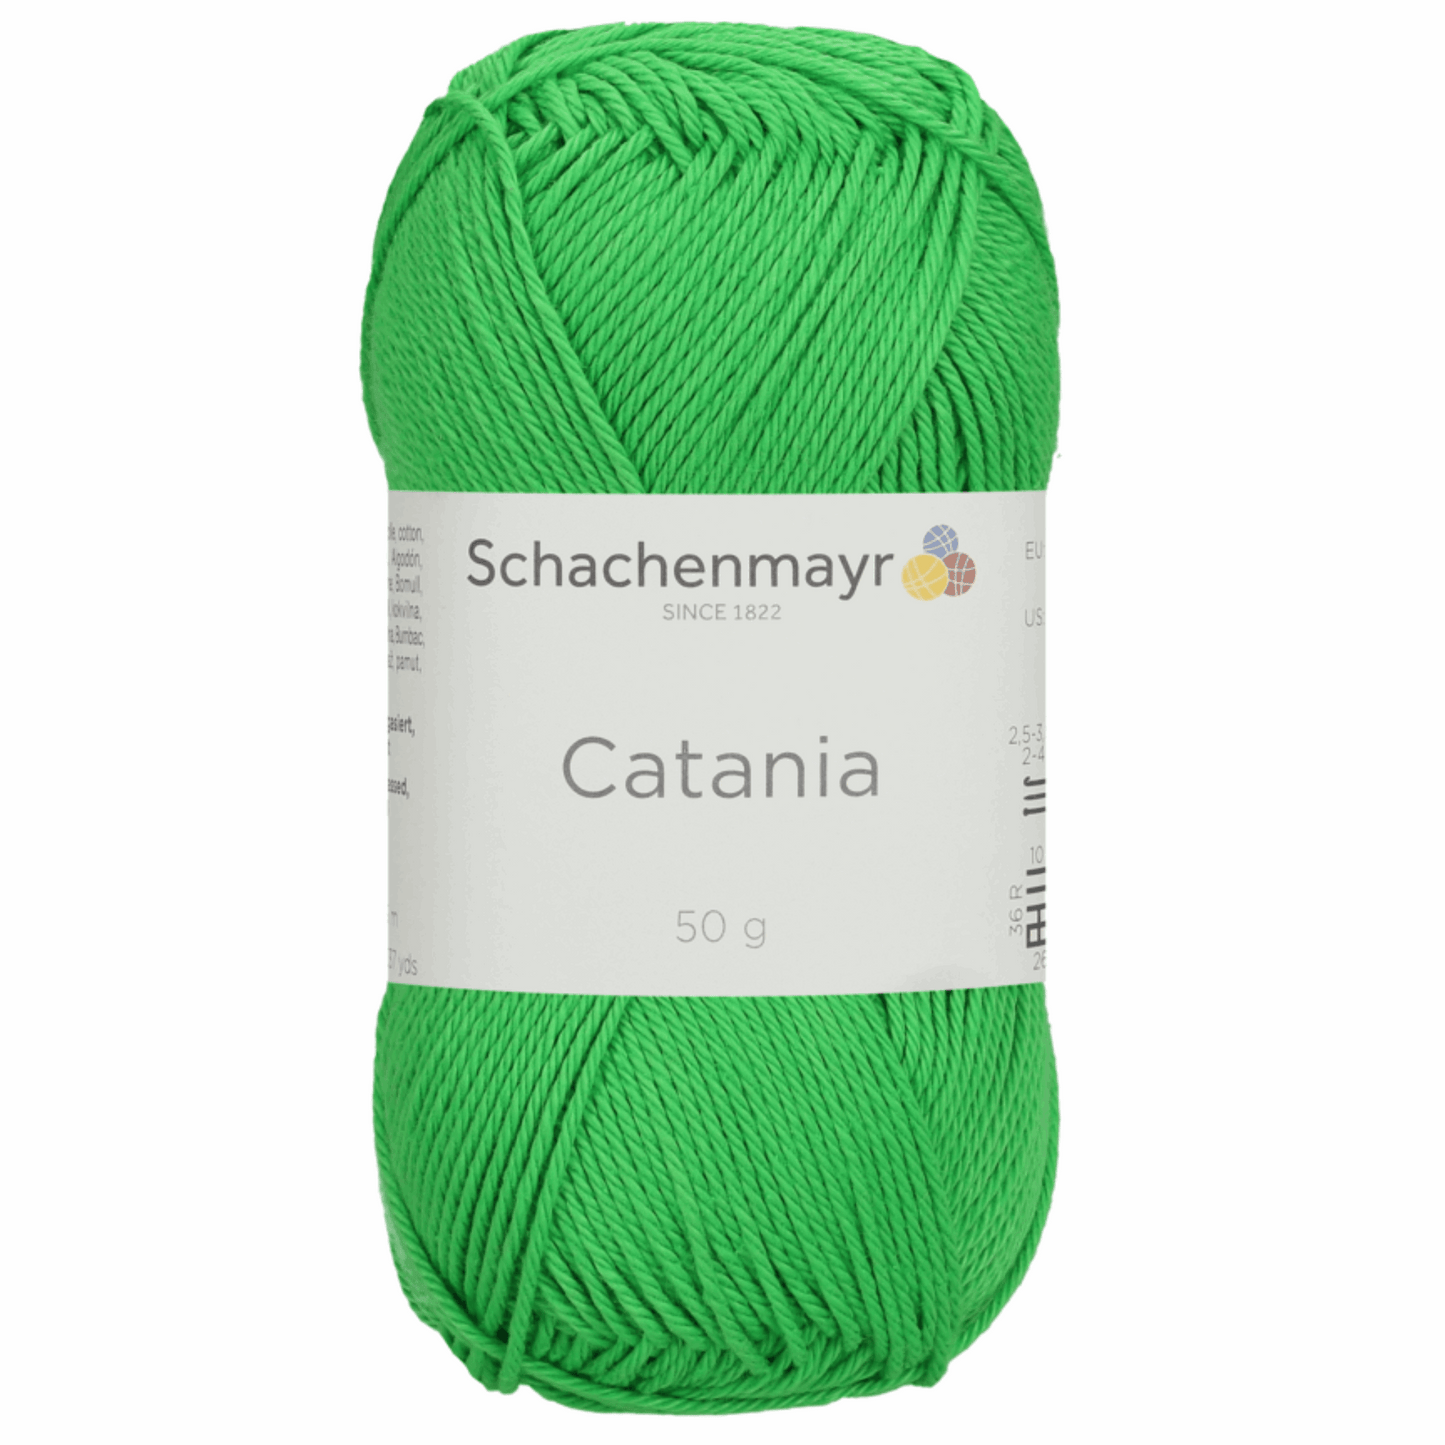 Catania 50g, 90344, Farbe 445, neon green